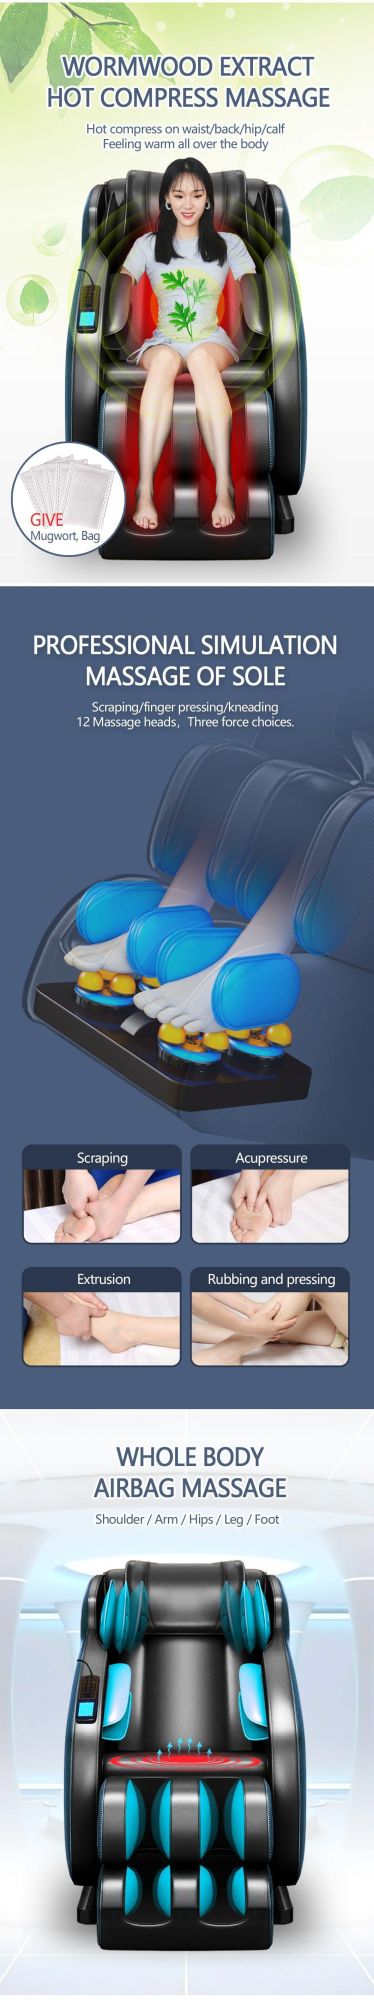 Luxury Cheaper Best 3D Zero Gavity Full Body Massage Equipment